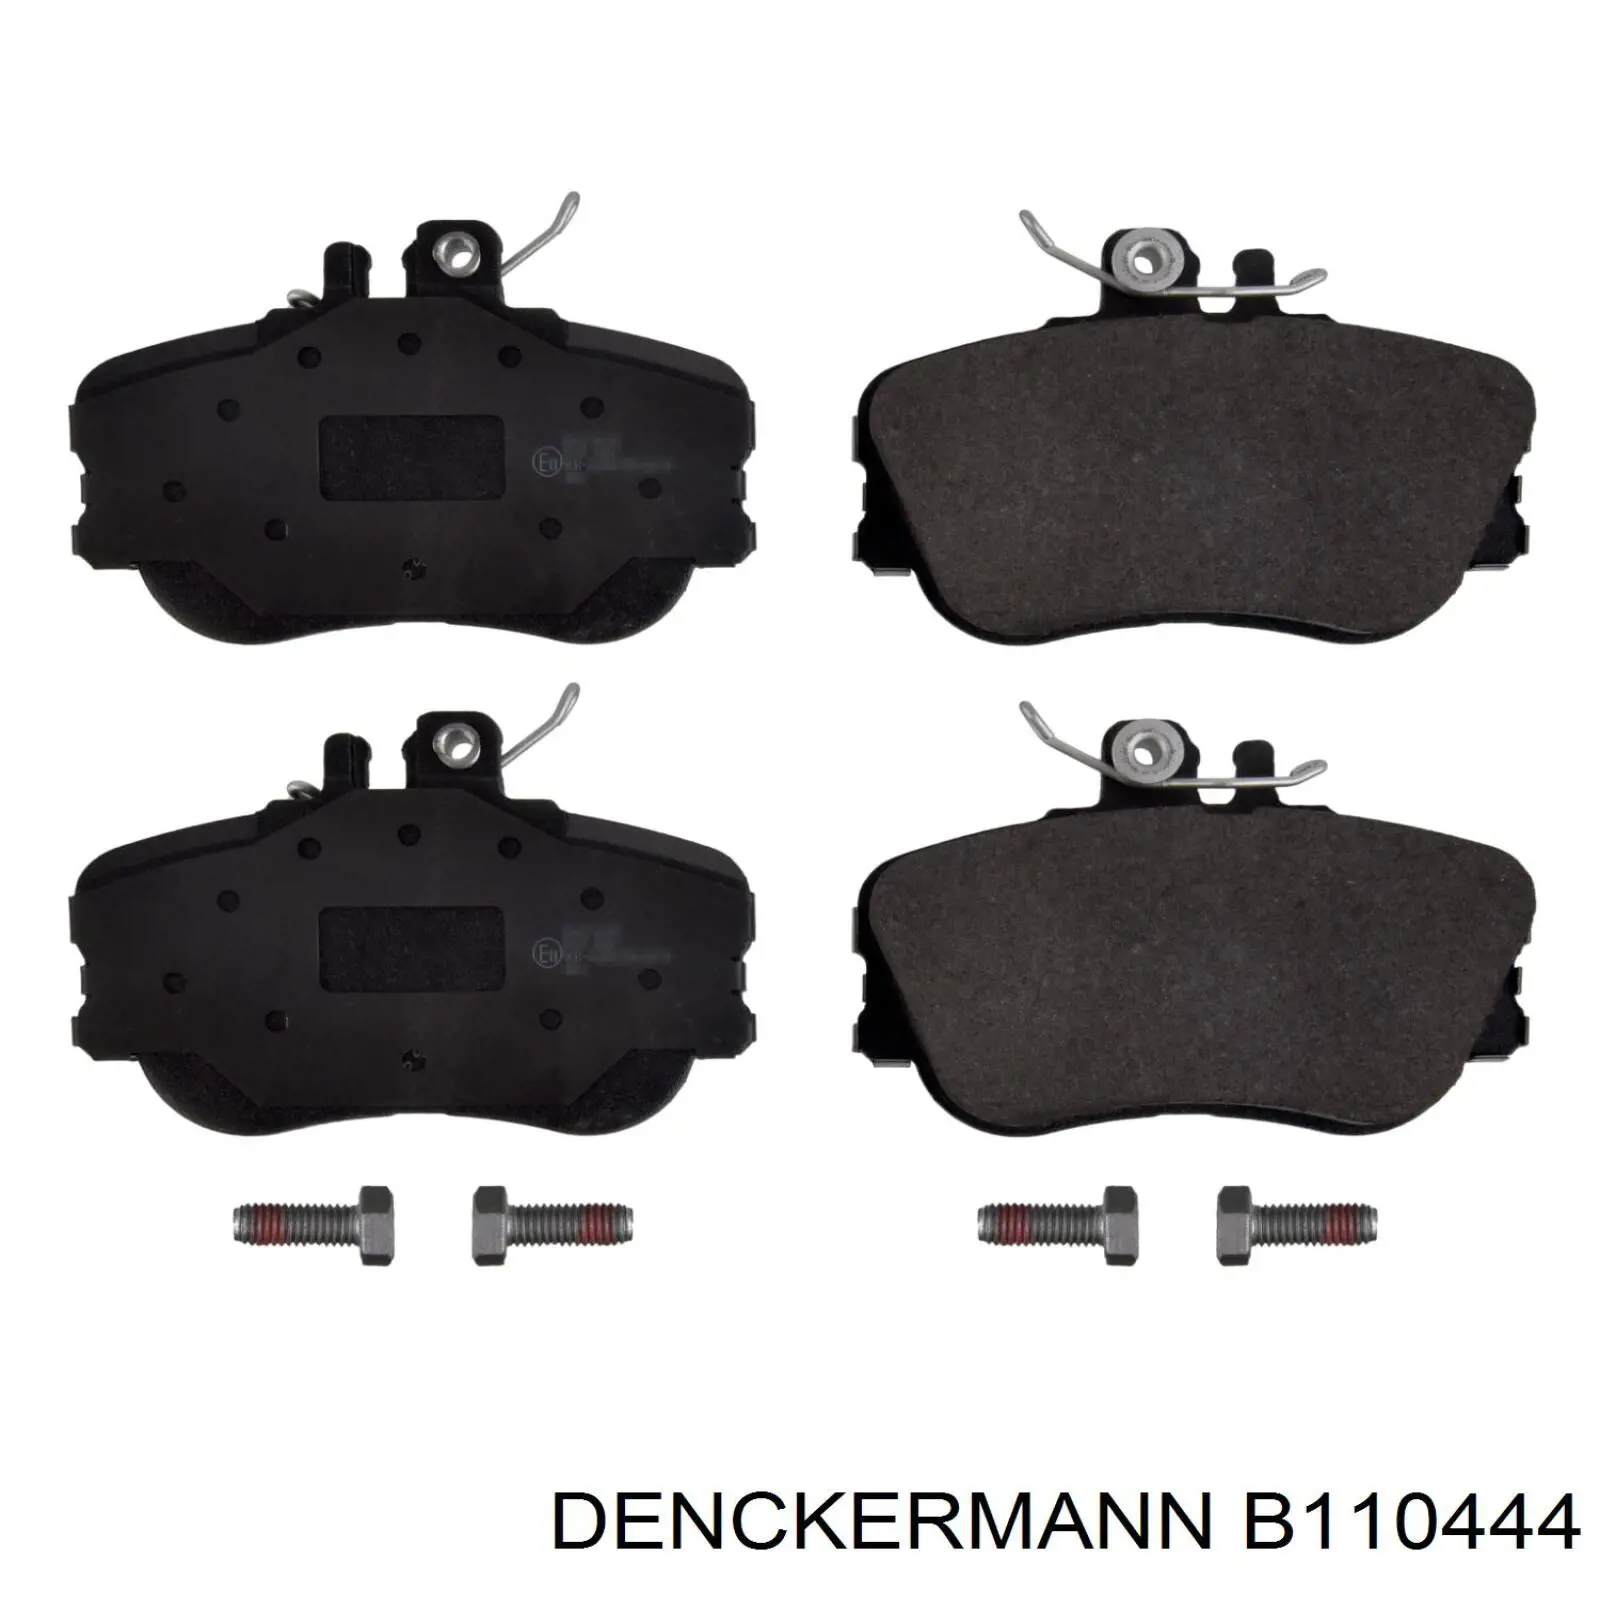 B110444 Denckermann pastillas de freno delanteras